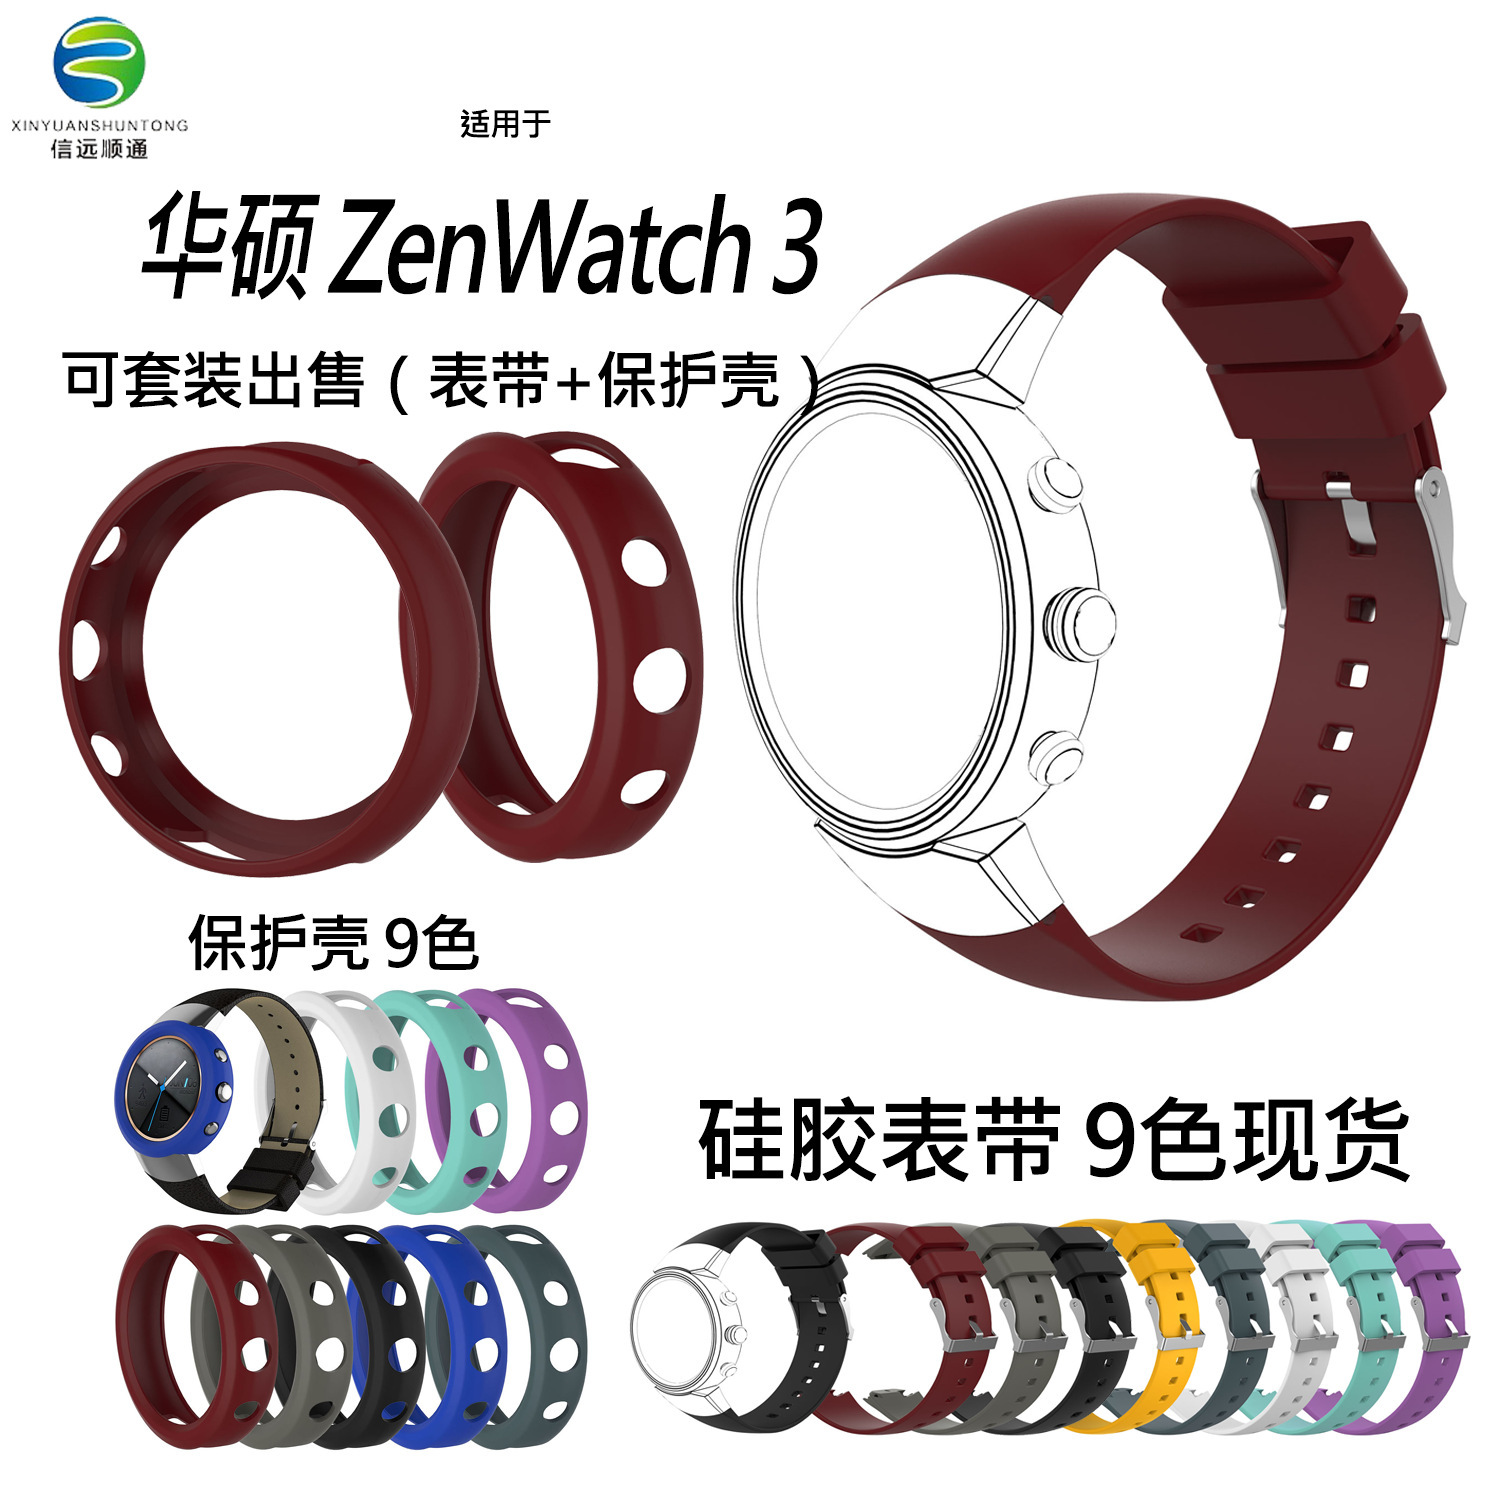 适用华硕ASUS zenwatch 3手表硅胶运动表带 1503保护壳/保护套